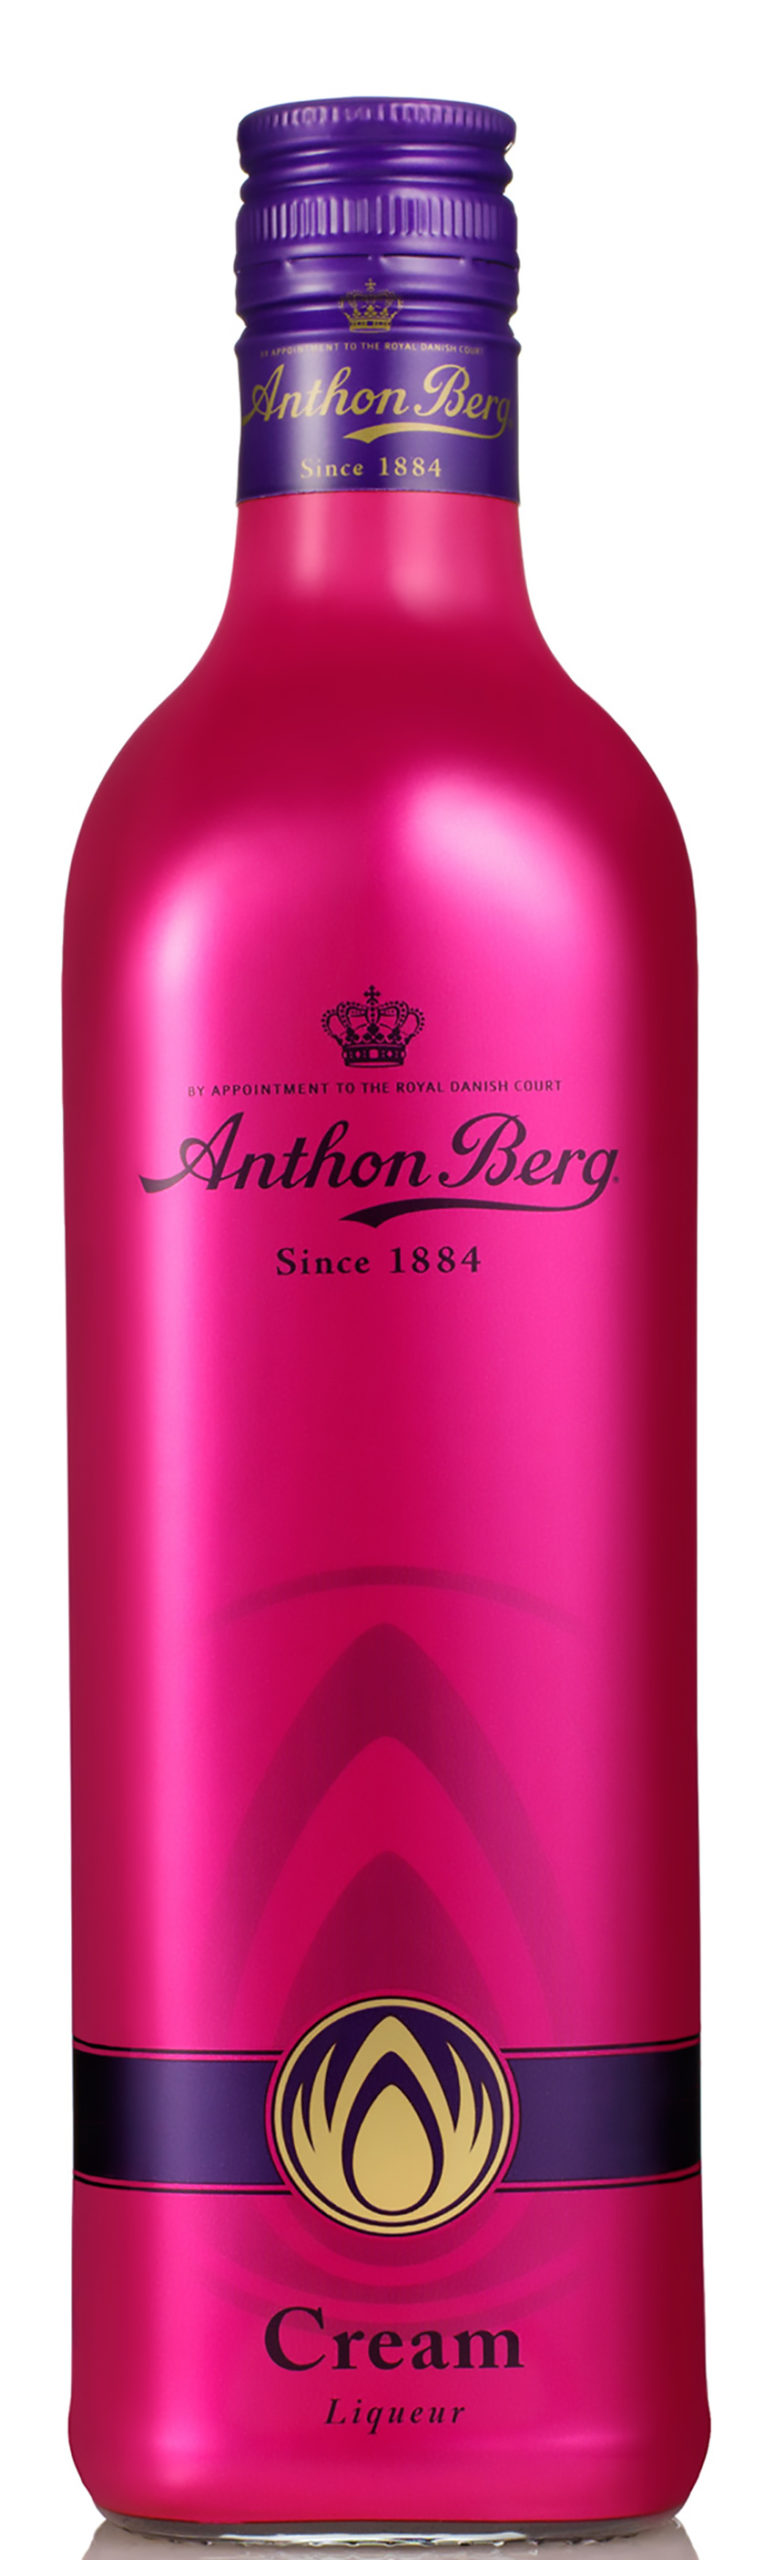 Anthon Berg Cream